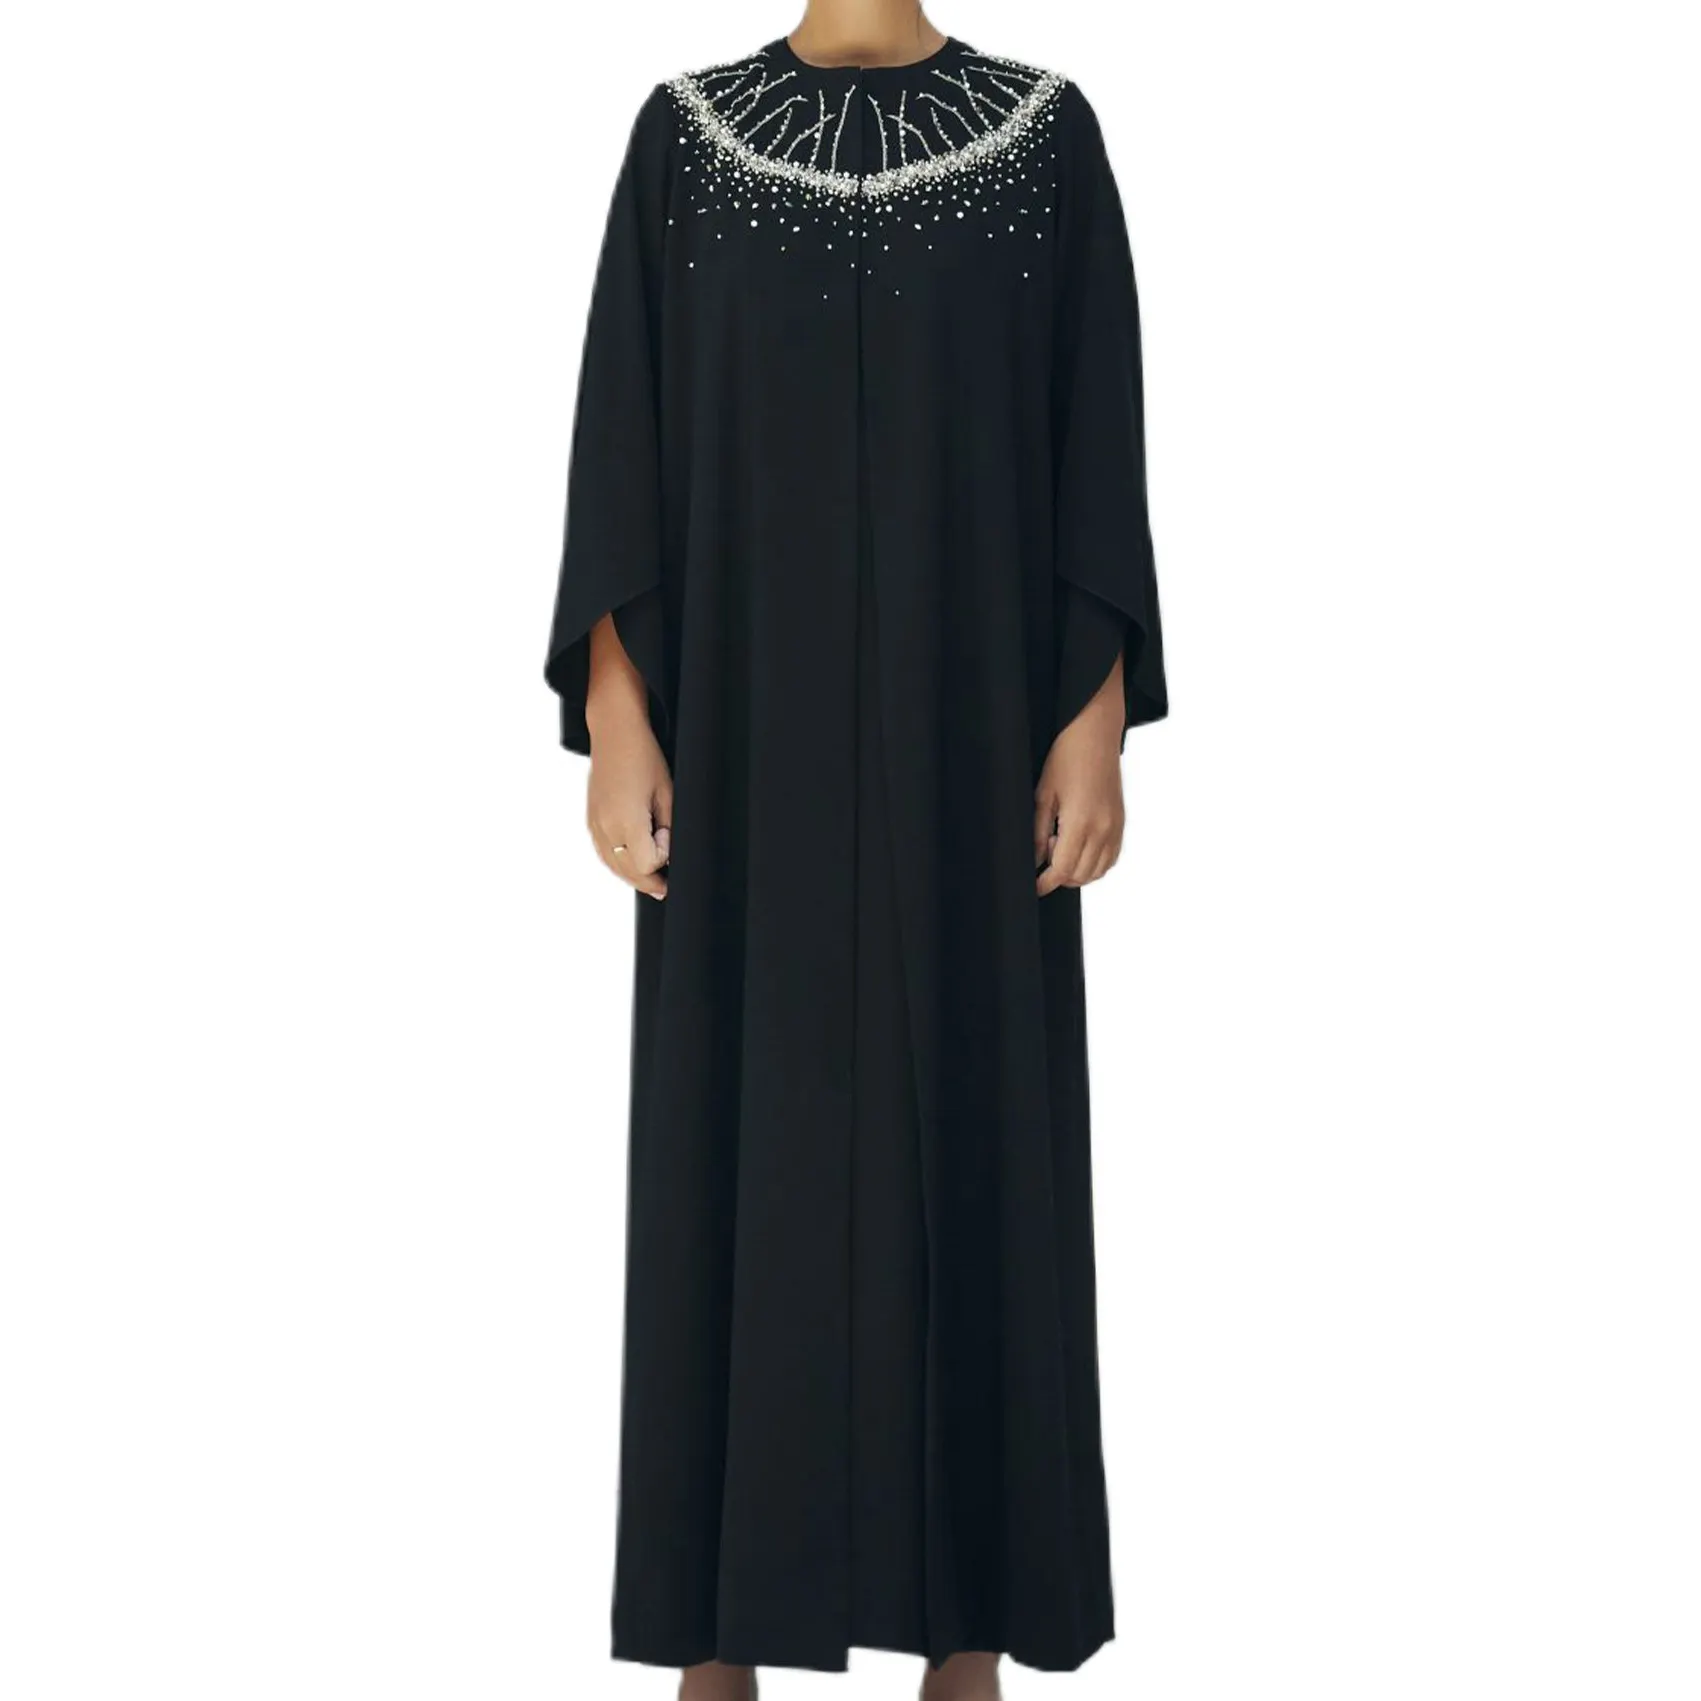 Turquie Dubai mütevazı Khimar başörtüsü Abaya nakış tasarımları siyah Rhinestone Abaya Baju arapça kadınlar yetişkinler yuvarlak Islam destek